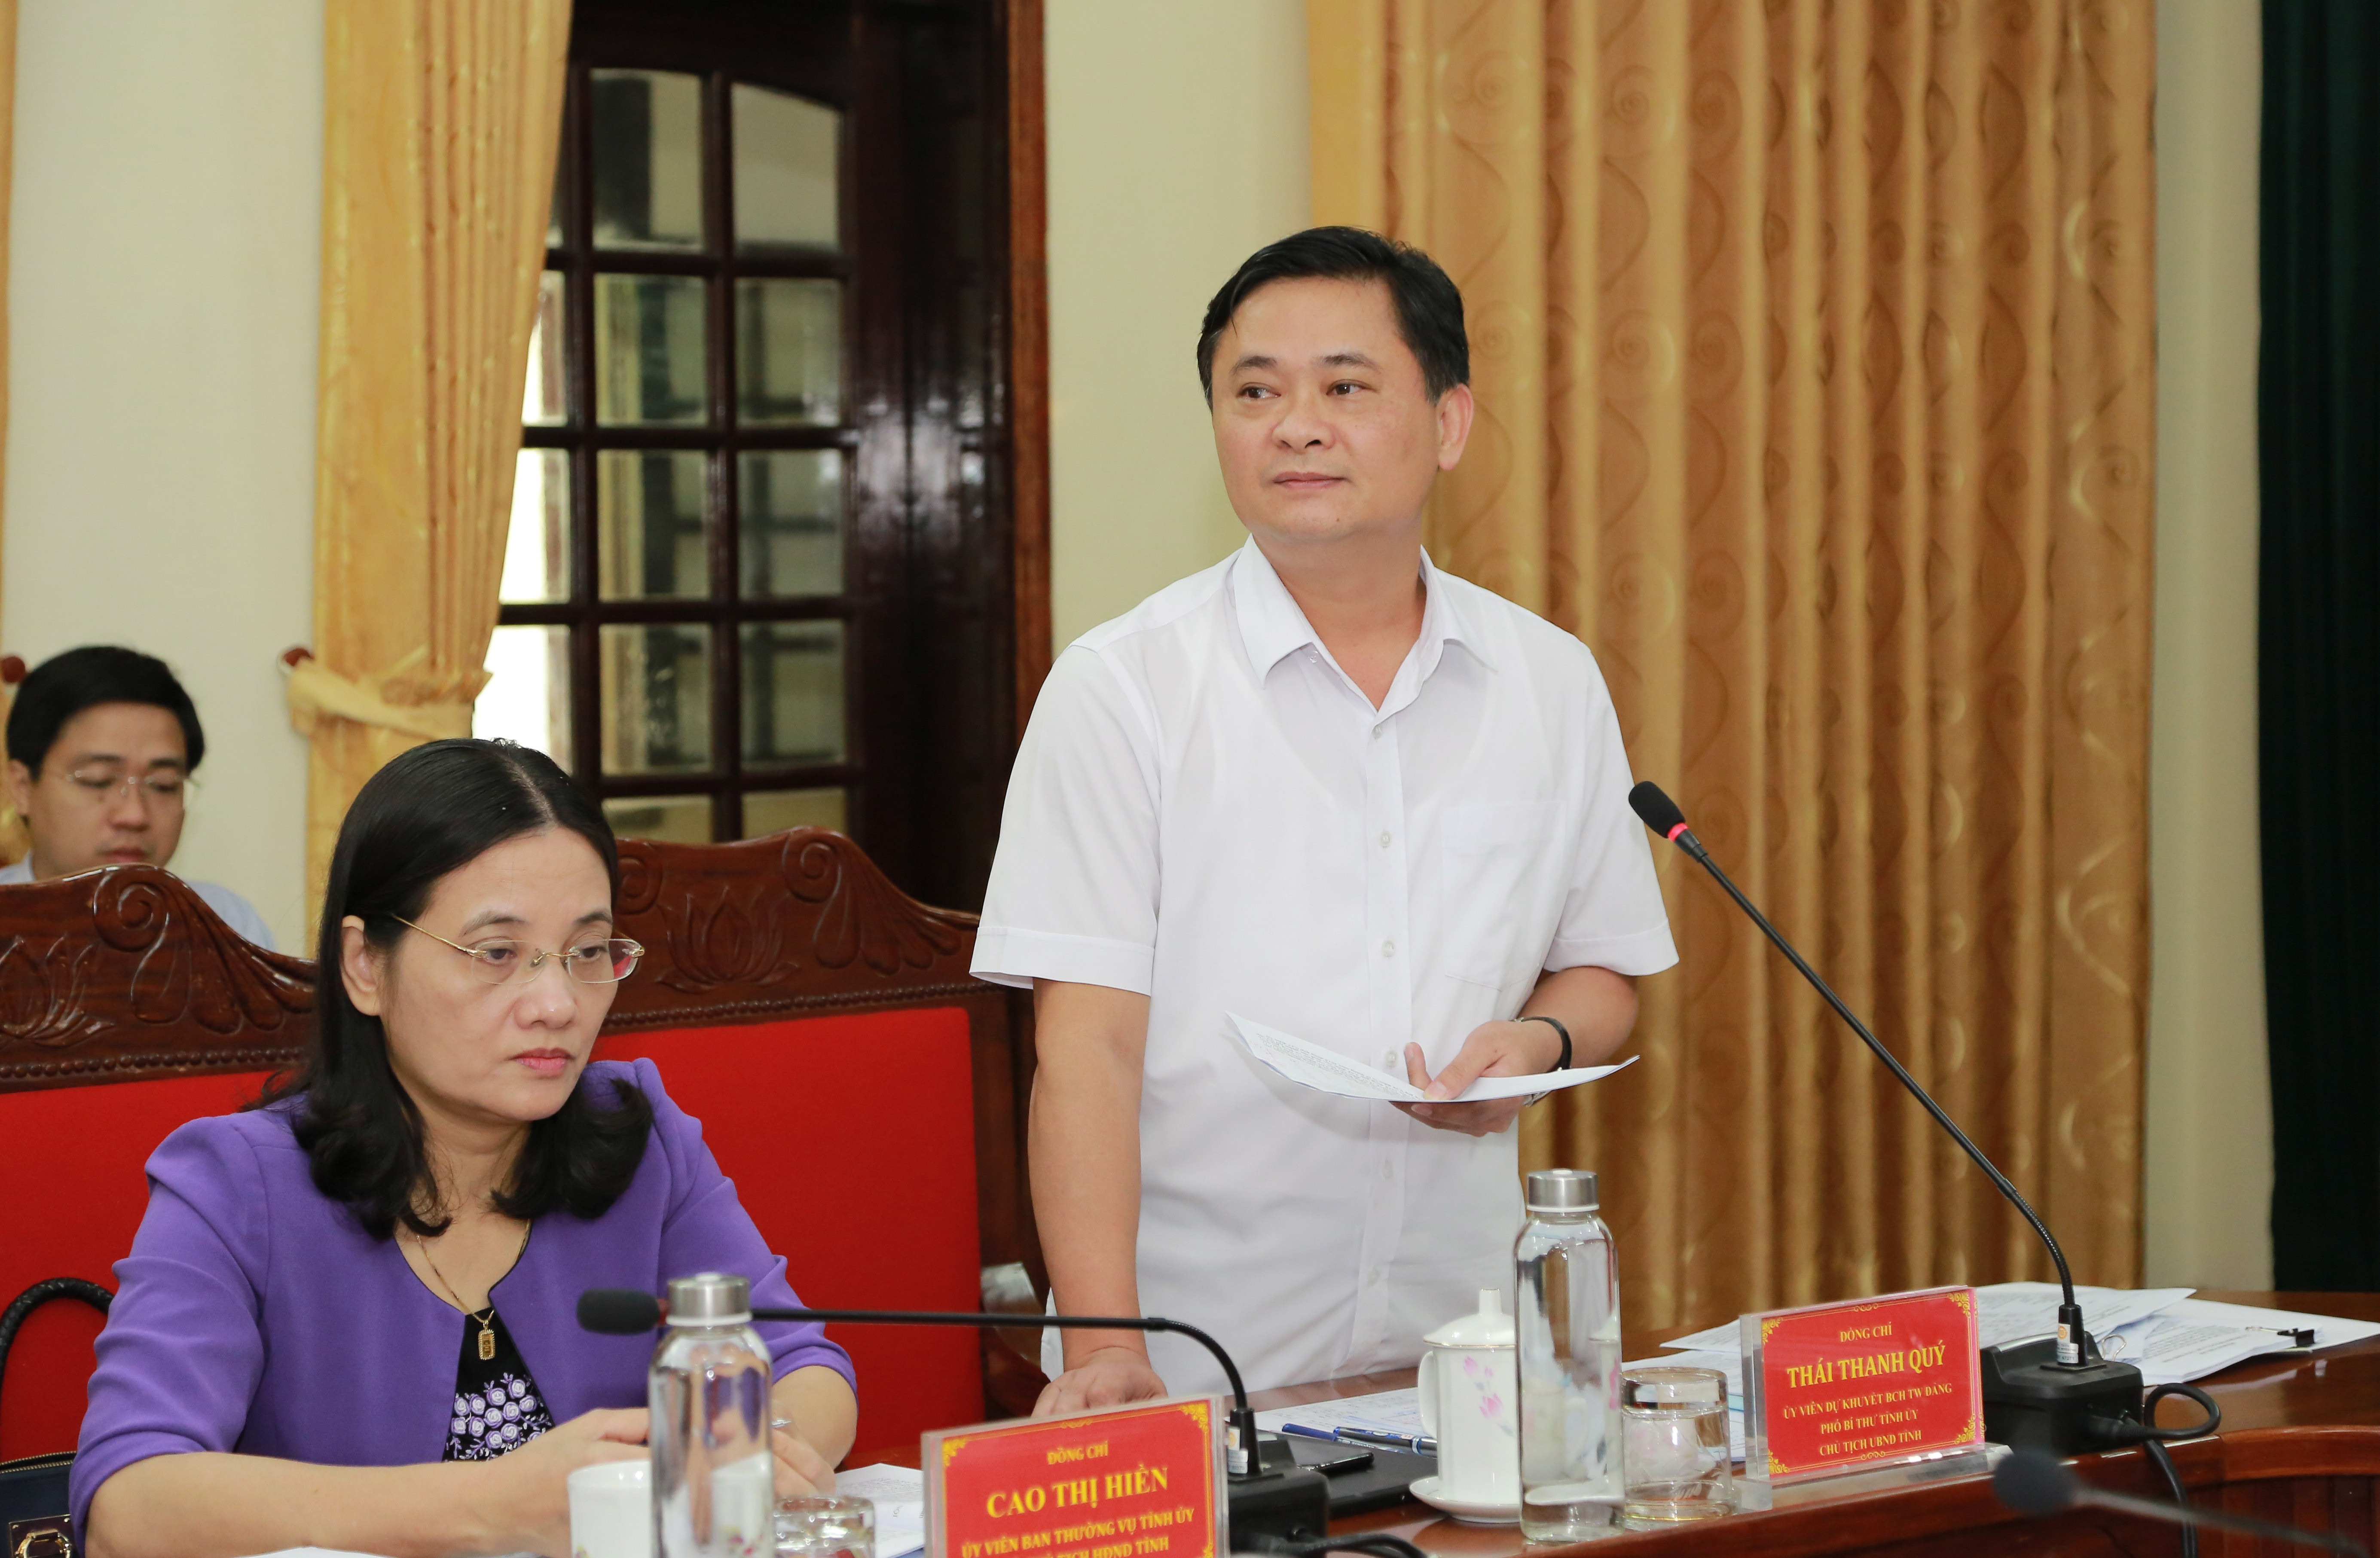 Chủ tịch UBND tỉnh Thái Thanh Quý phát biểu tại buổi làm việc. Ảnh: Đào Tuấn